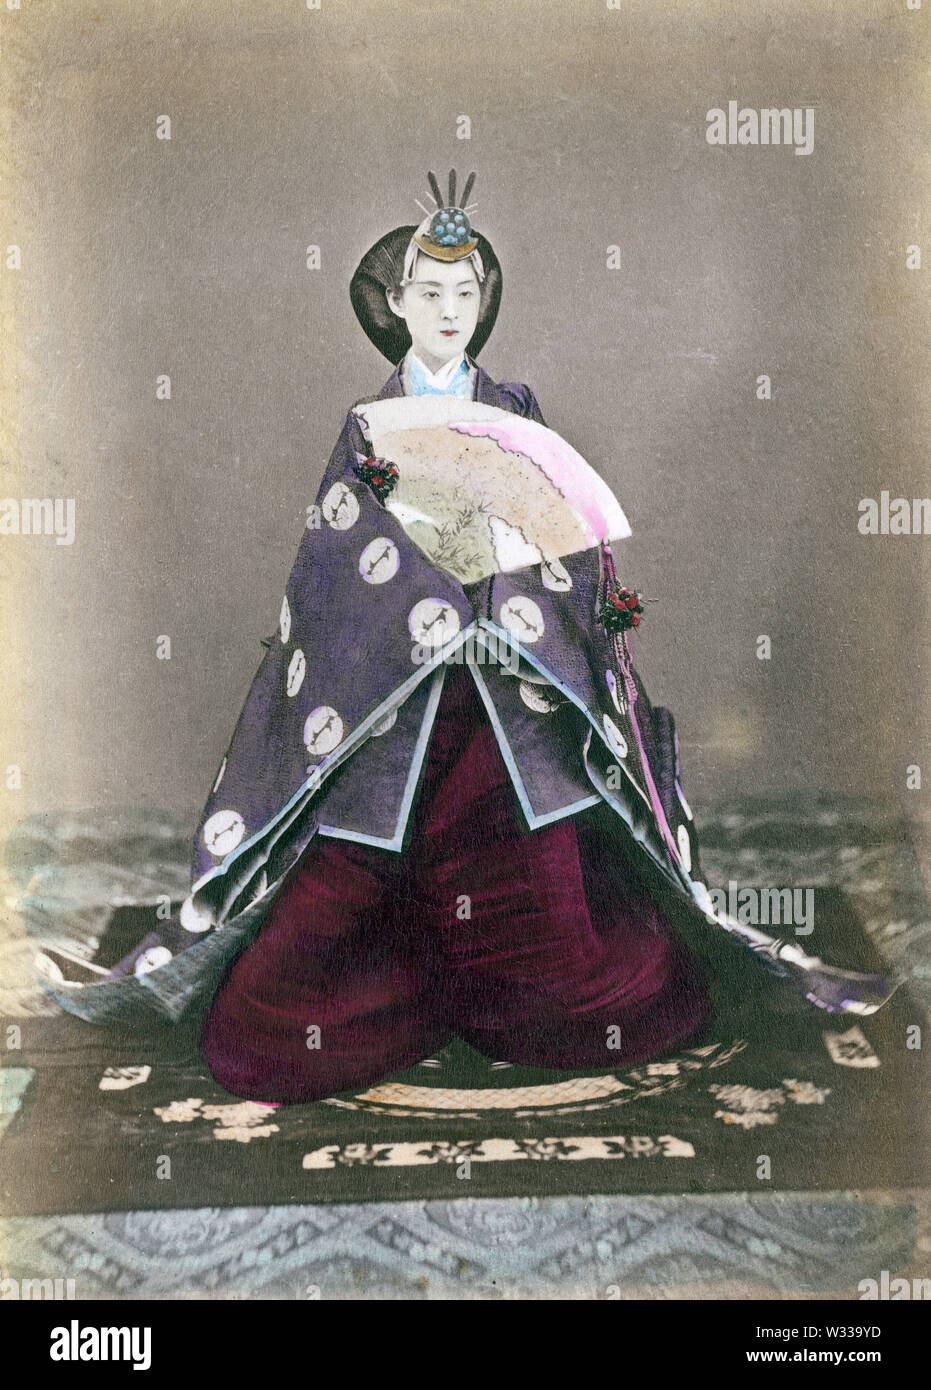 [ 1870 Giappone - Imperatrice Shoken ] - Ritratto di imperatrice Shoken (昭憲皇后, Shoken Kogo, 1849-1914), consorte dell'Imperatore Meiji. Nato come Masako Ichijo (一条勝子), ha adottato il nome dato Haruko (美子) quando ella divenne impegnato per l'Imperatore Meiji il 2 settembre 1867 (Keio 2). Il suo nome postumo è stato cambiato per l'Imperatrice Shoken. Fotografata da Uchida Kuichi (1844-1875) nel 1872 (Meiji 5). Uchida è stato il primo fotografo il permesso di fotografare la Meiji Imperatore e l'Imperatrice. L'imperatore non è stato fotografato di nuovo fino al 1889 (Meiji 22). Xix secolo albume vintage fotografia. Foto Stock